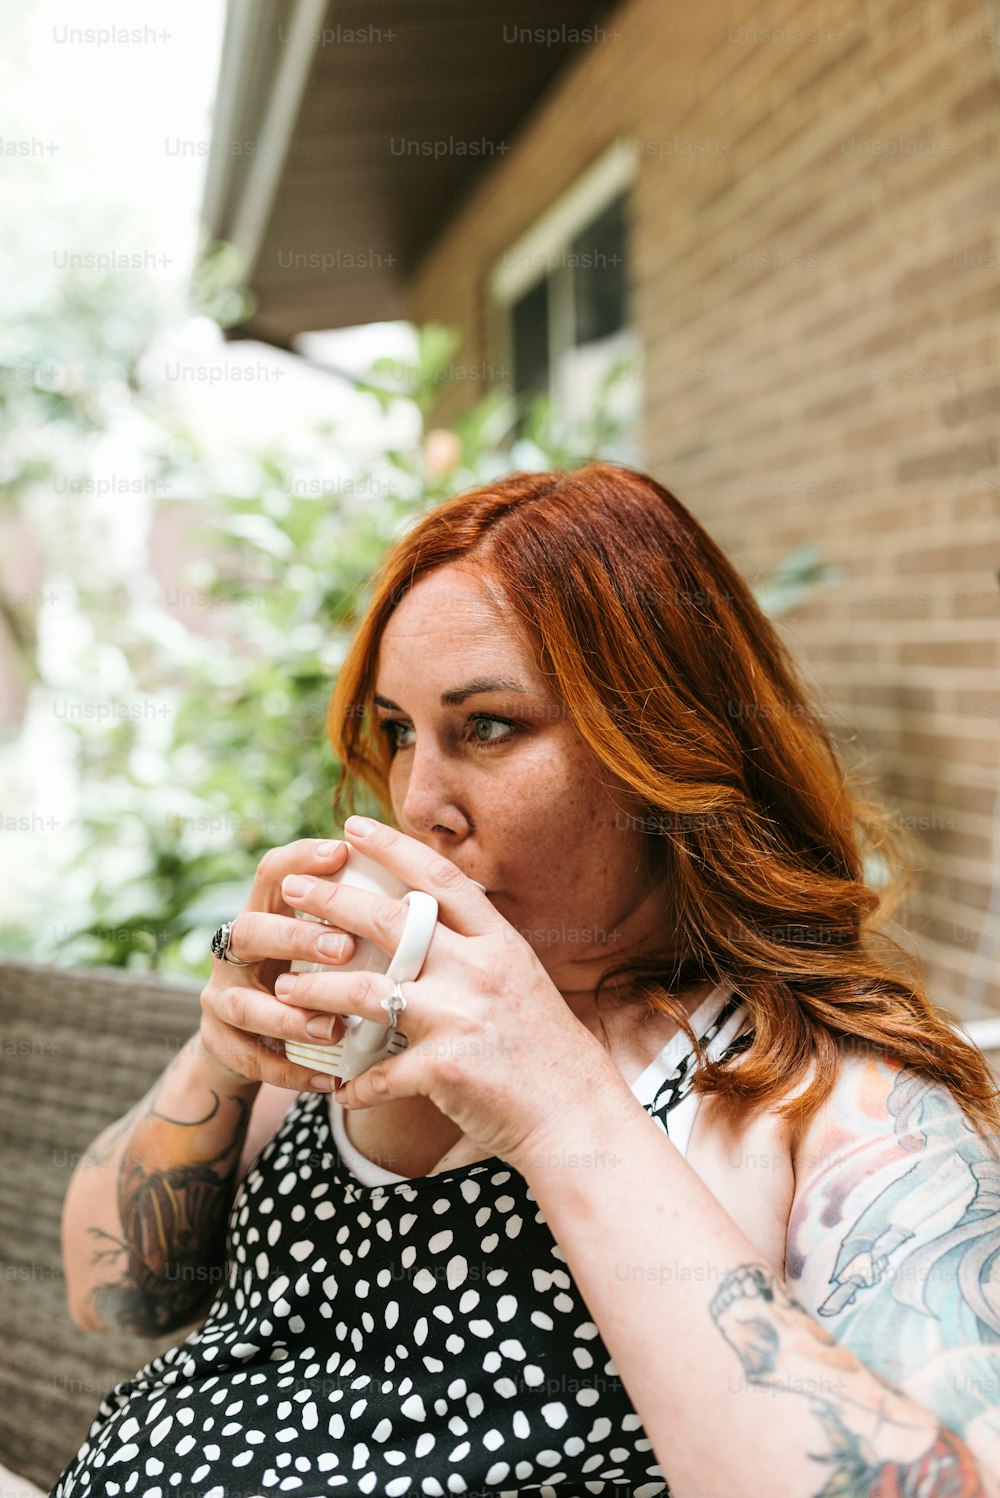 Una mujer sentada en un banco bebiendo de una taza